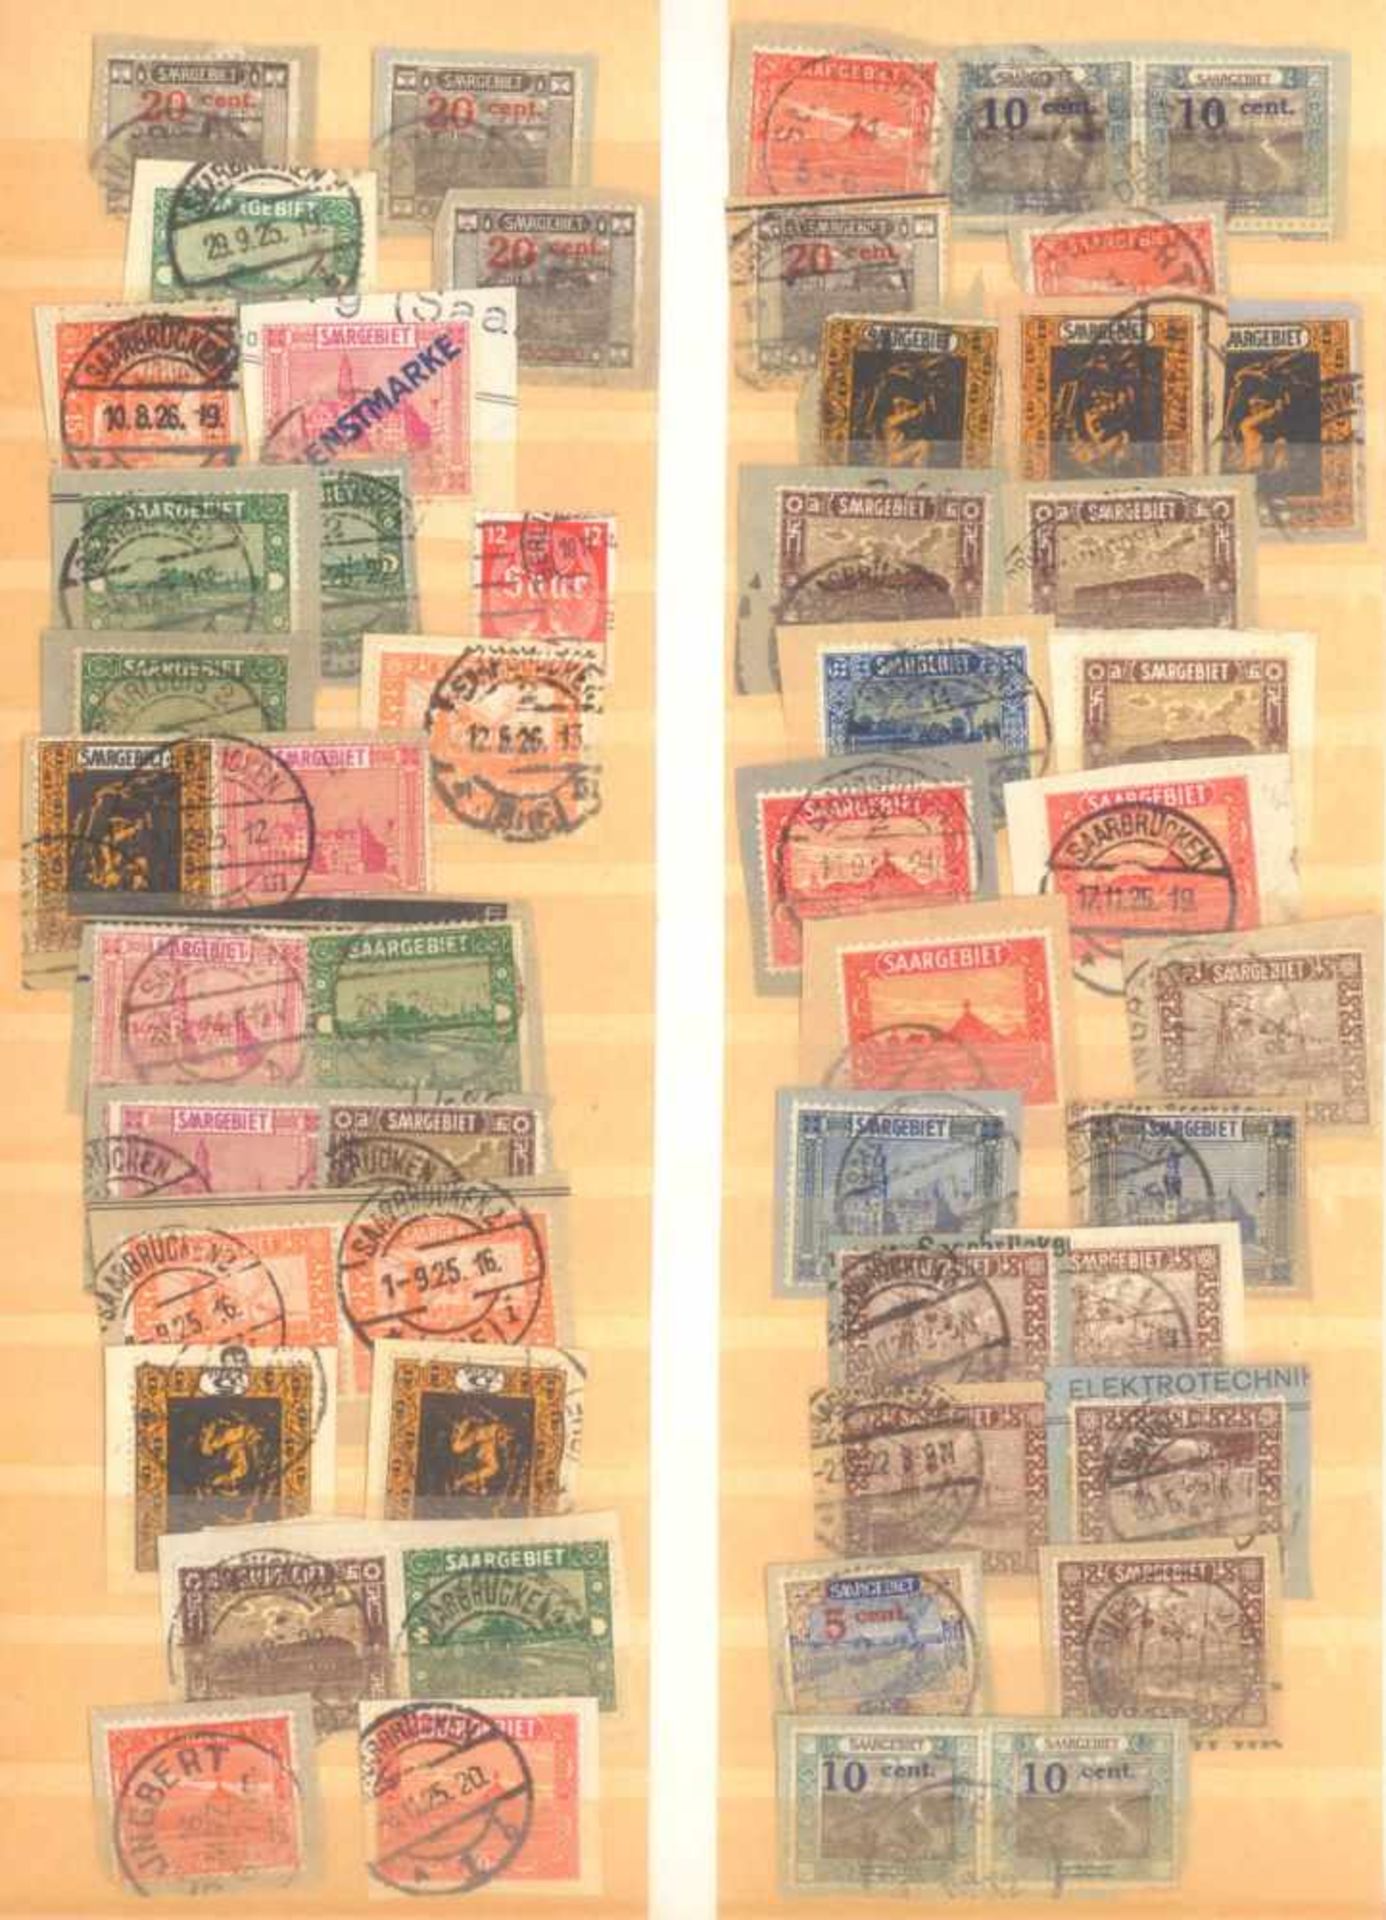 FRANKENTHALER NACHLASSuriger Nachlass mit Briefmarken und Belegen. Dabei DeutschesReich, altes - Bild 10 aus 46